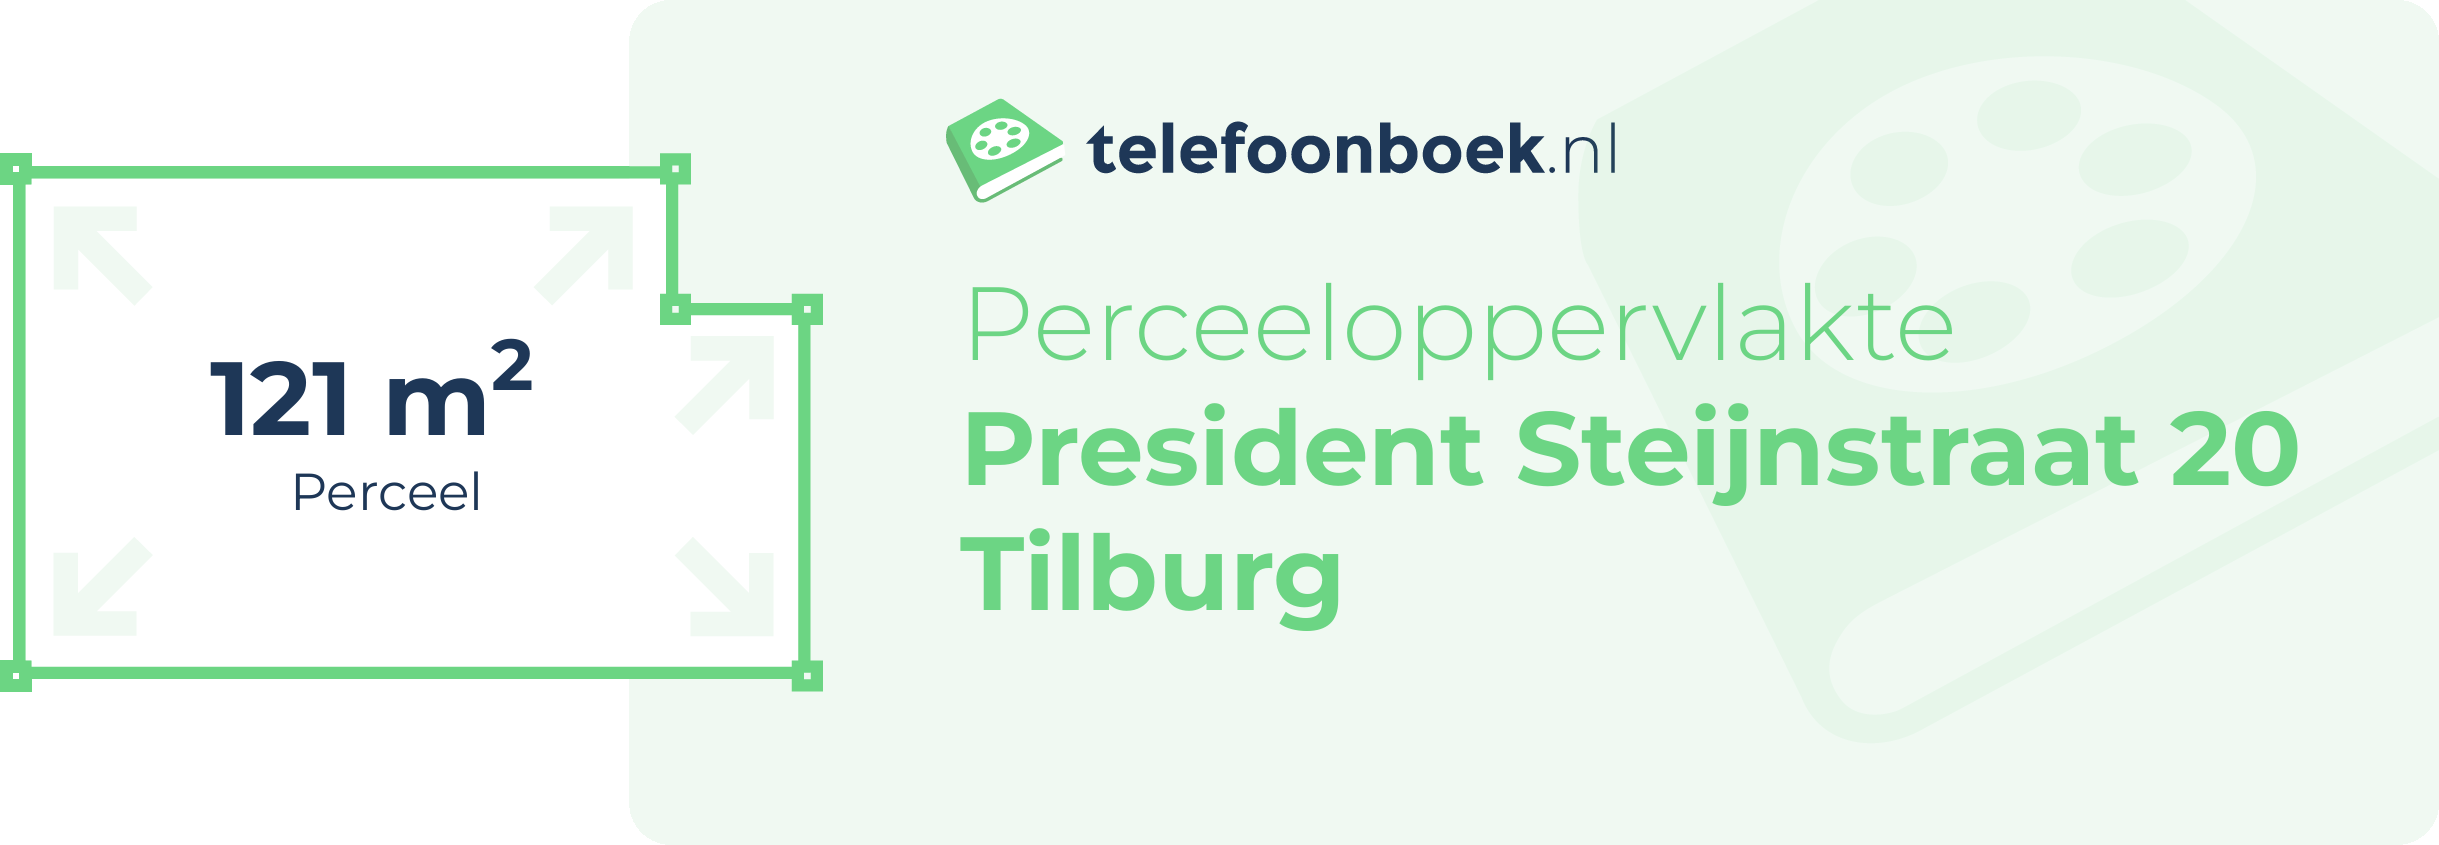 Perceeloppervlakte President Steijnstraat 20 Tilburg